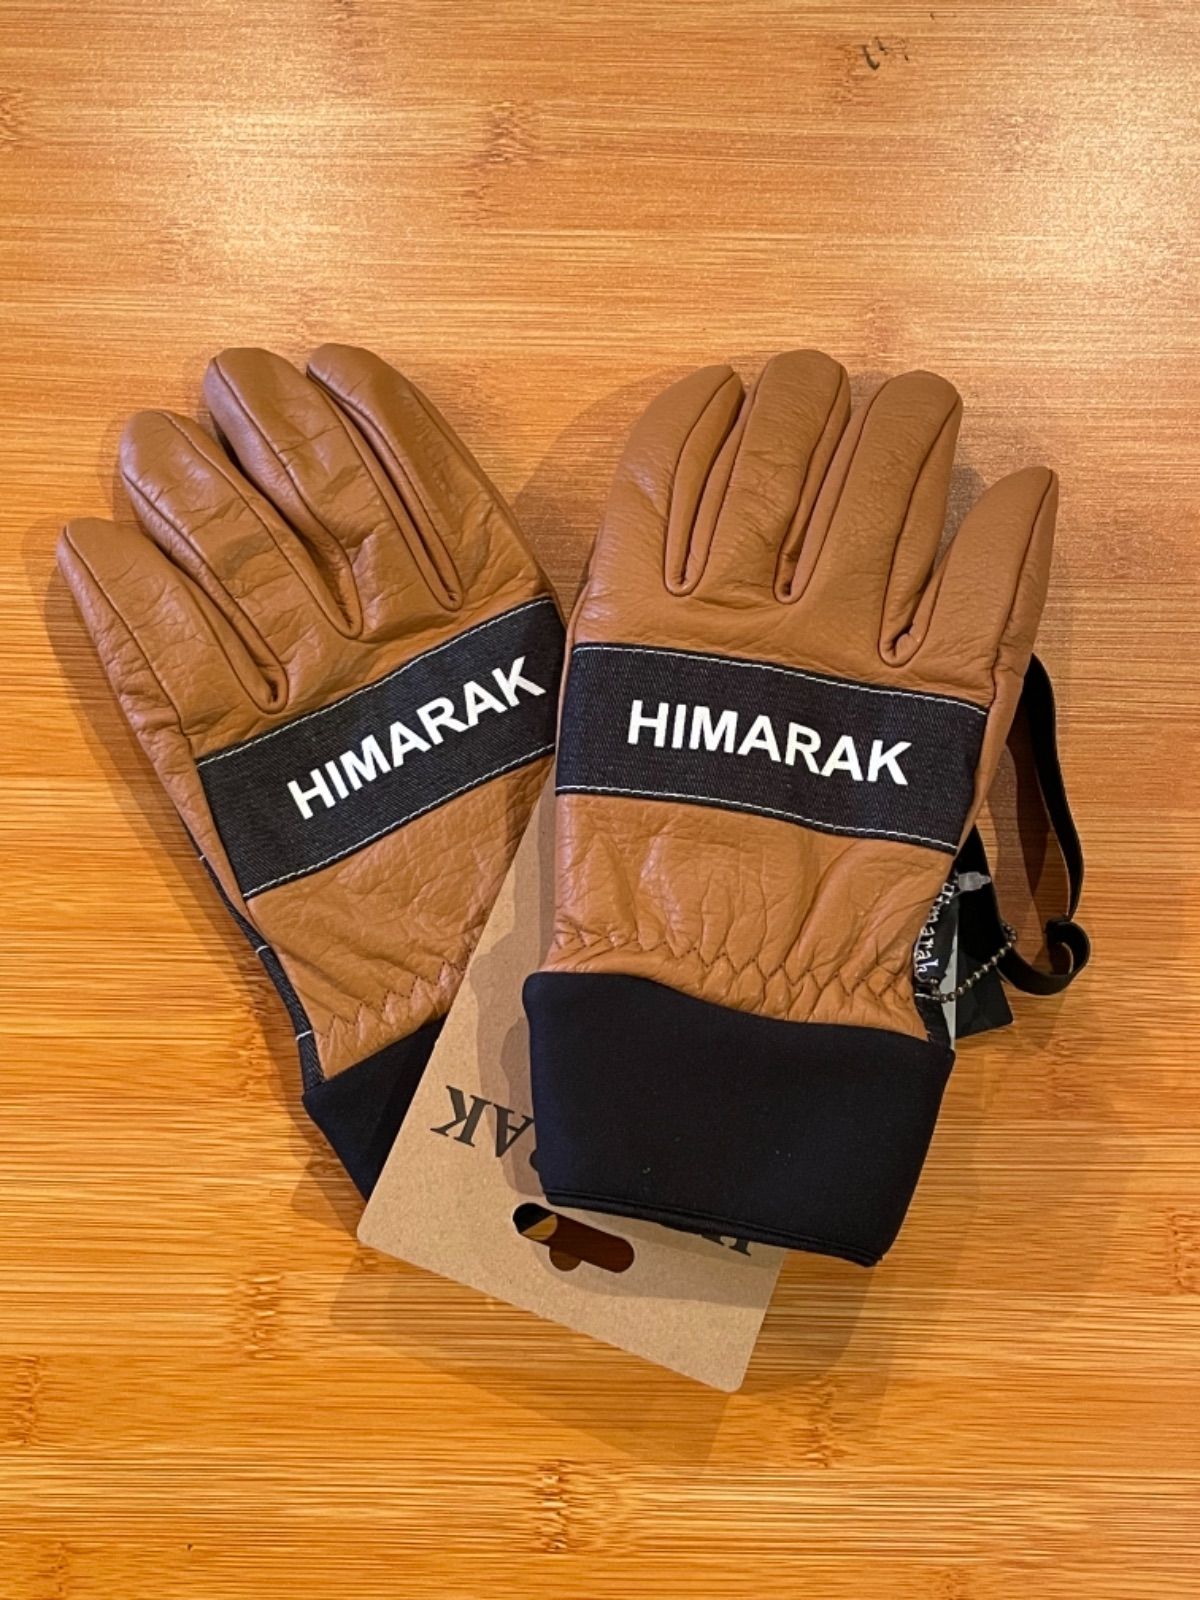 OAK I Himarak glove ヒマラク スキー&スノーボードグローブ - メルカリ